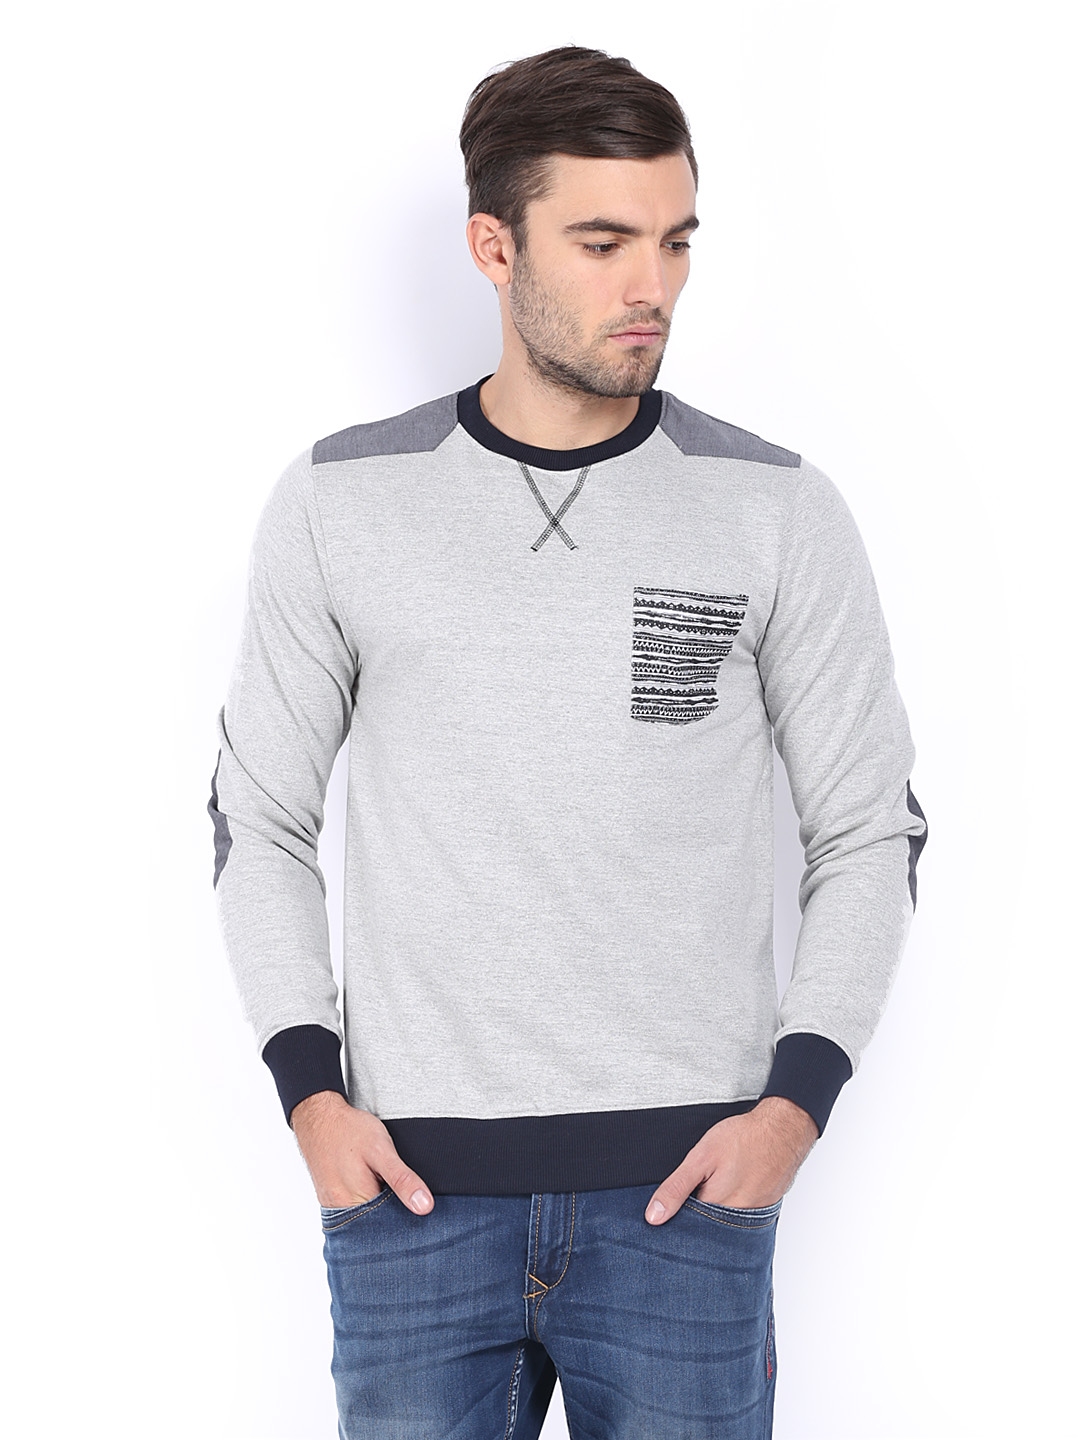 Download Buy Lee Cooper Men Grey Melange Sweatshirt - Sweatshirts ...